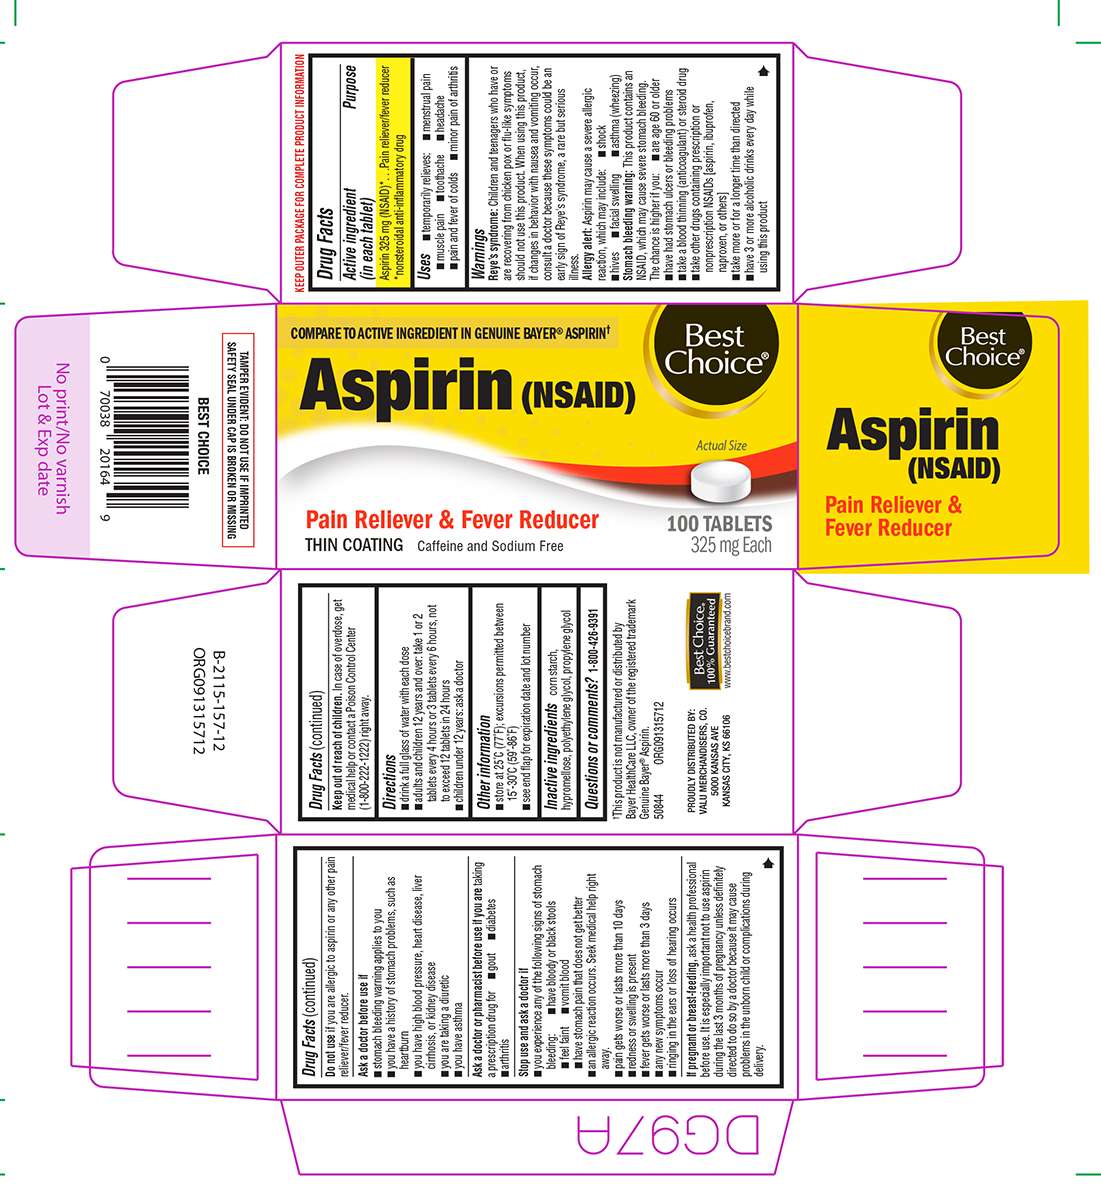 Aspirin NSAID